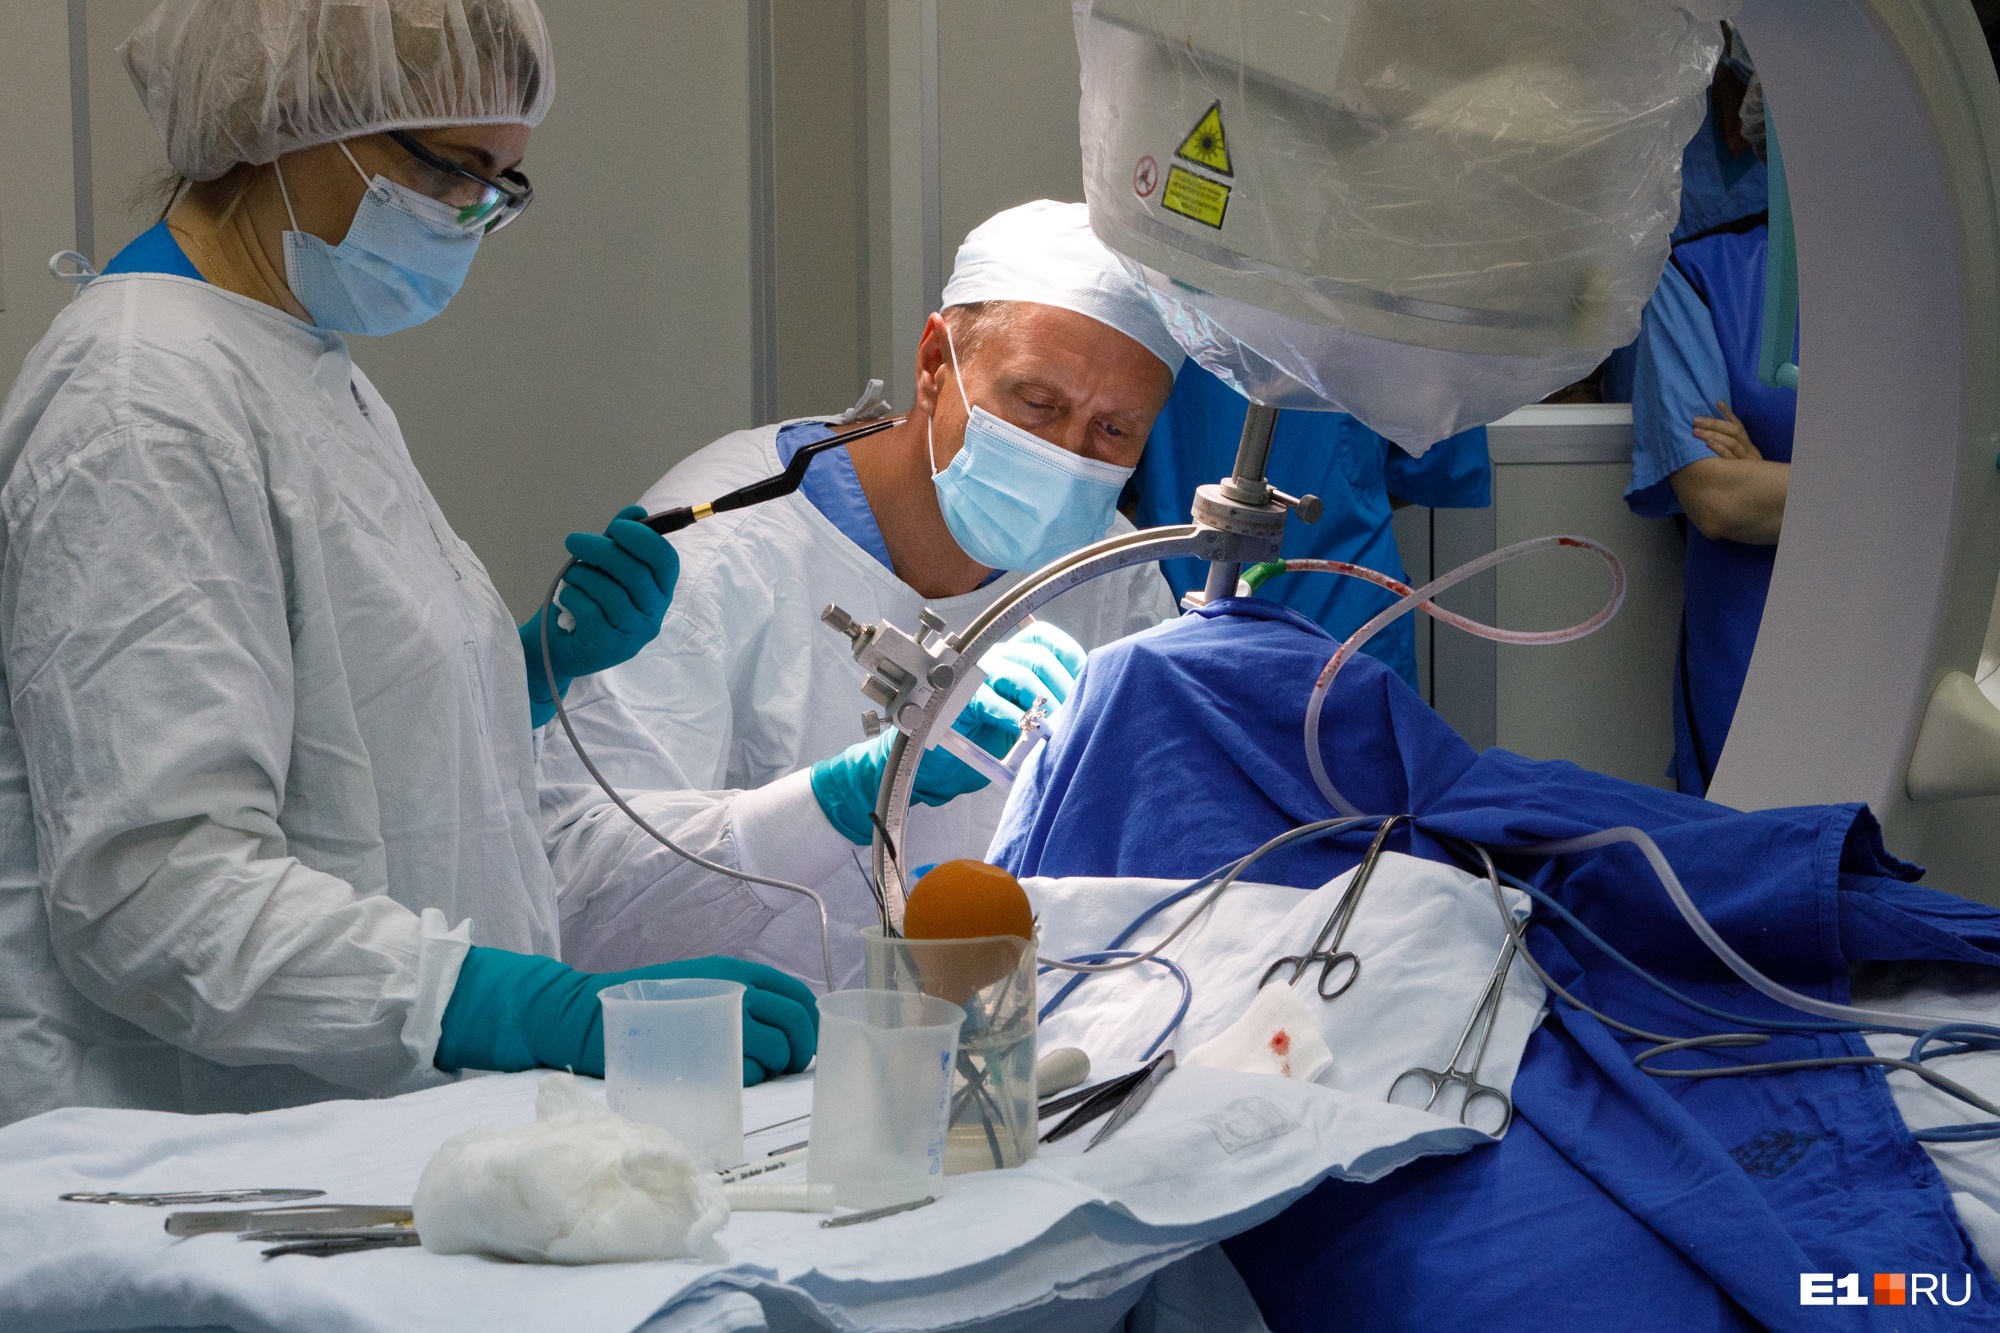 Уральские нейрохирурги провели уникальную операцию. Пациент сможет управлять своим телом с помощью пульта